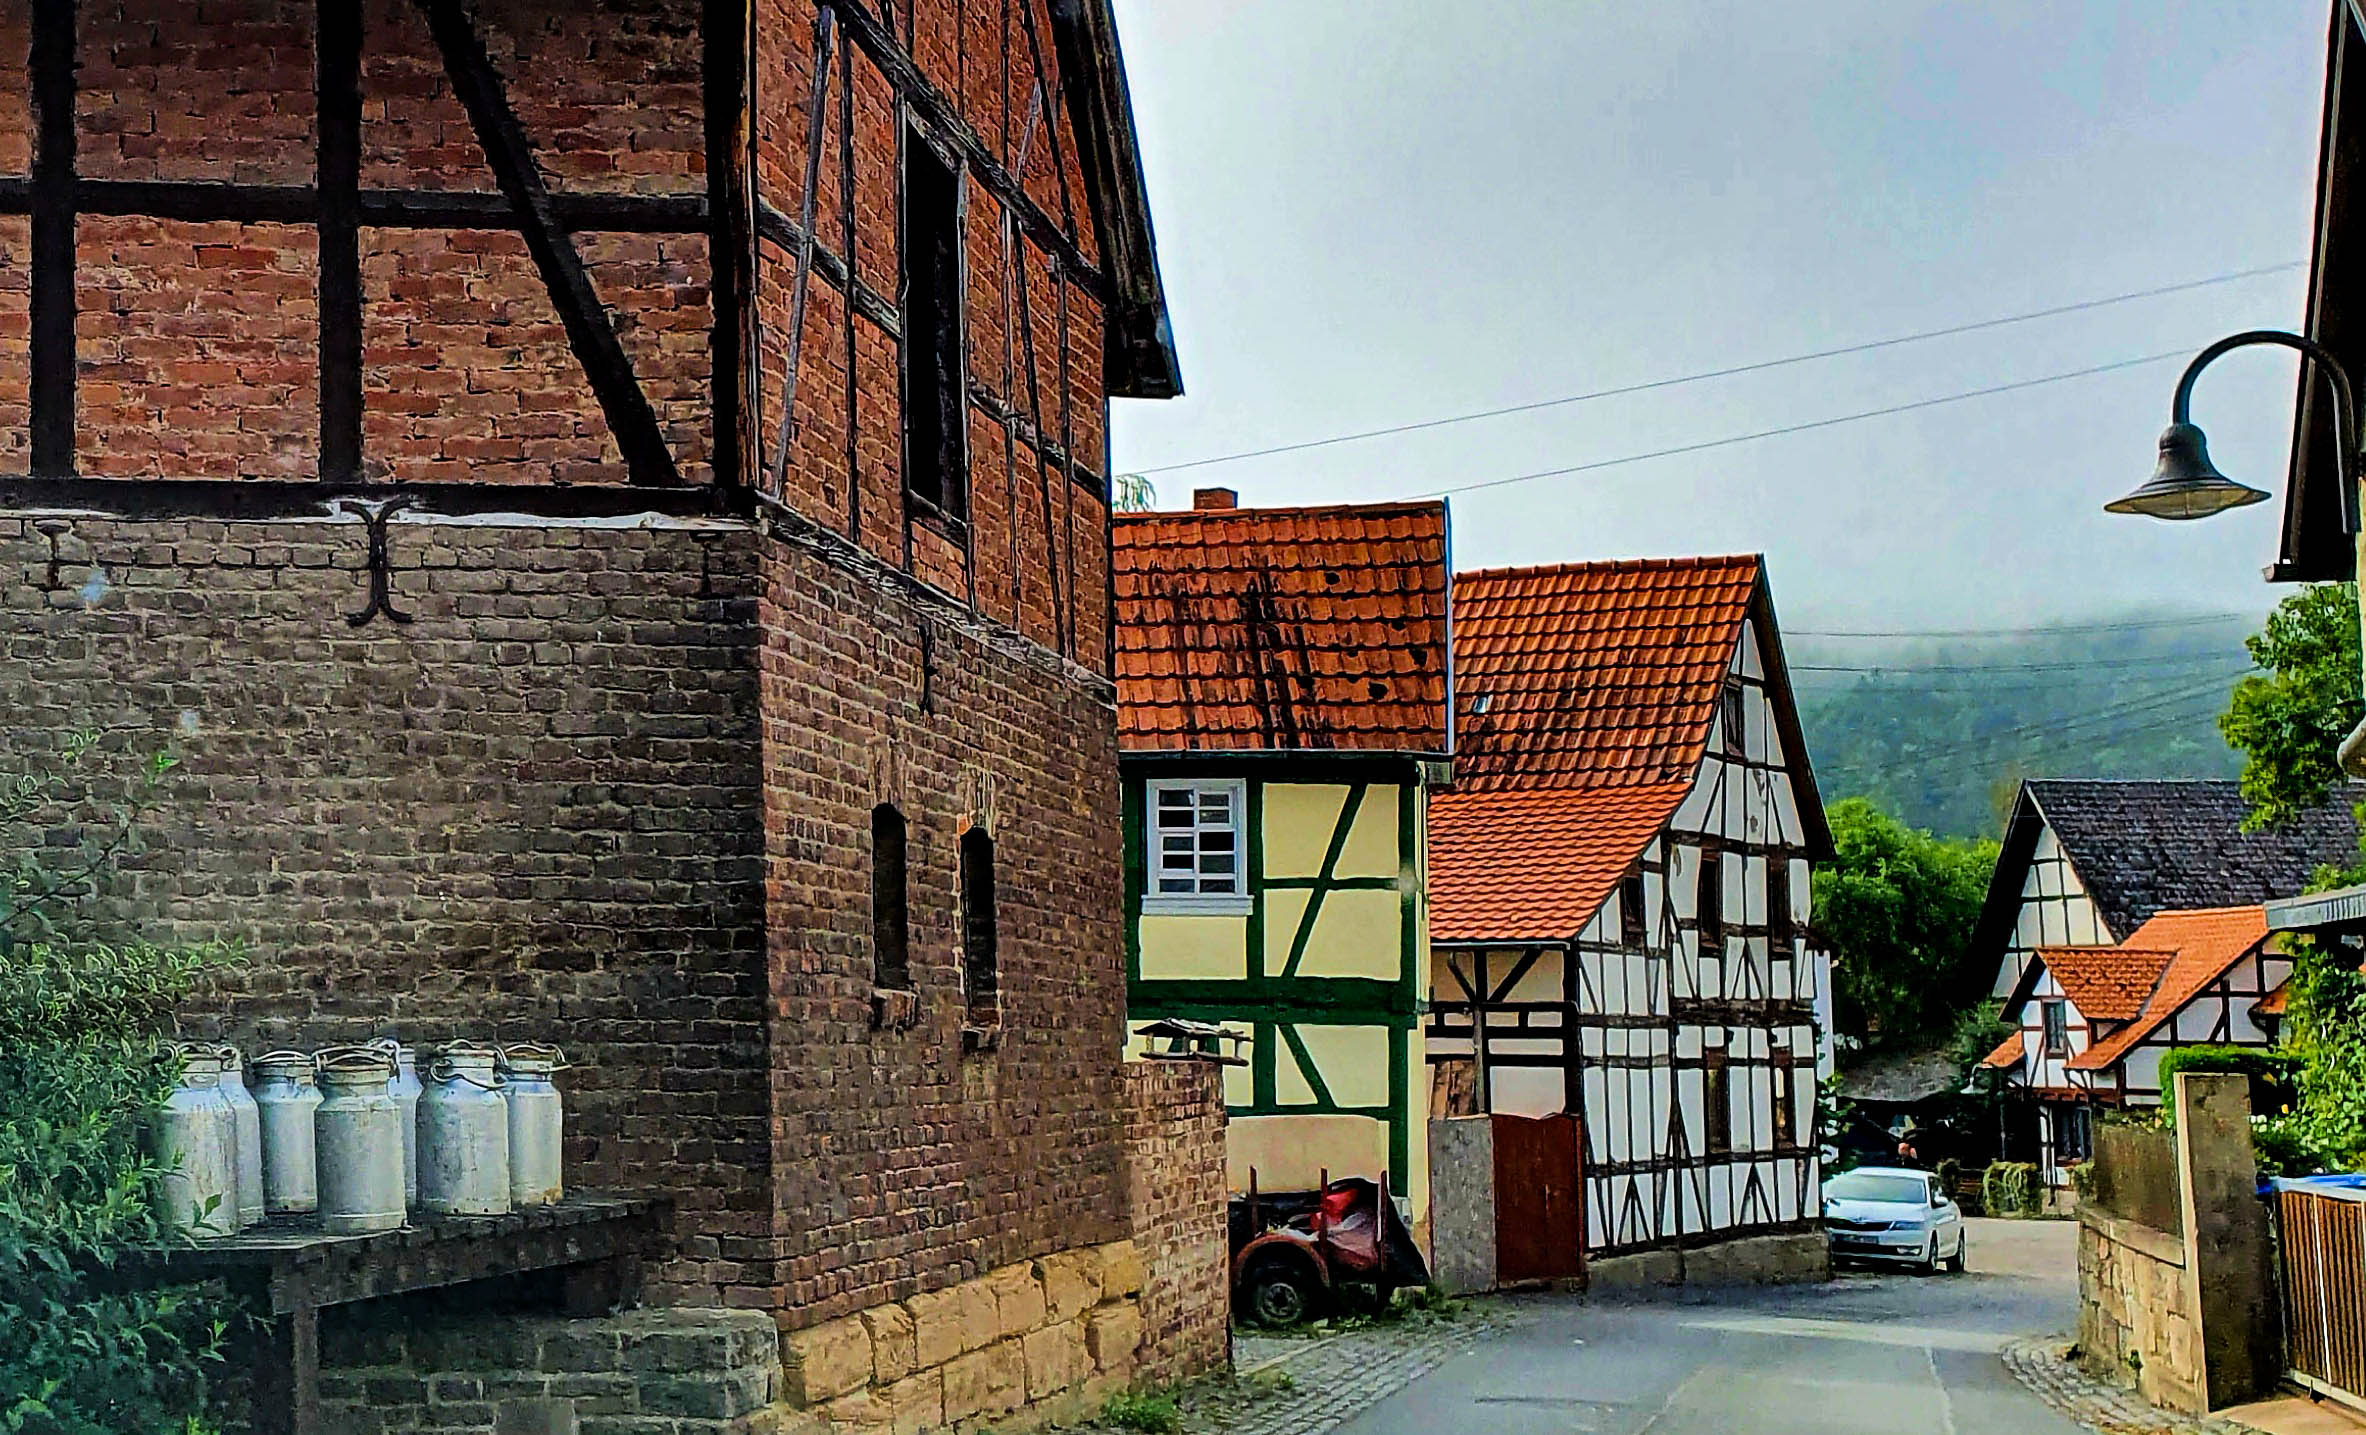 het dorp Heldra met diverse vakwerkhuizen